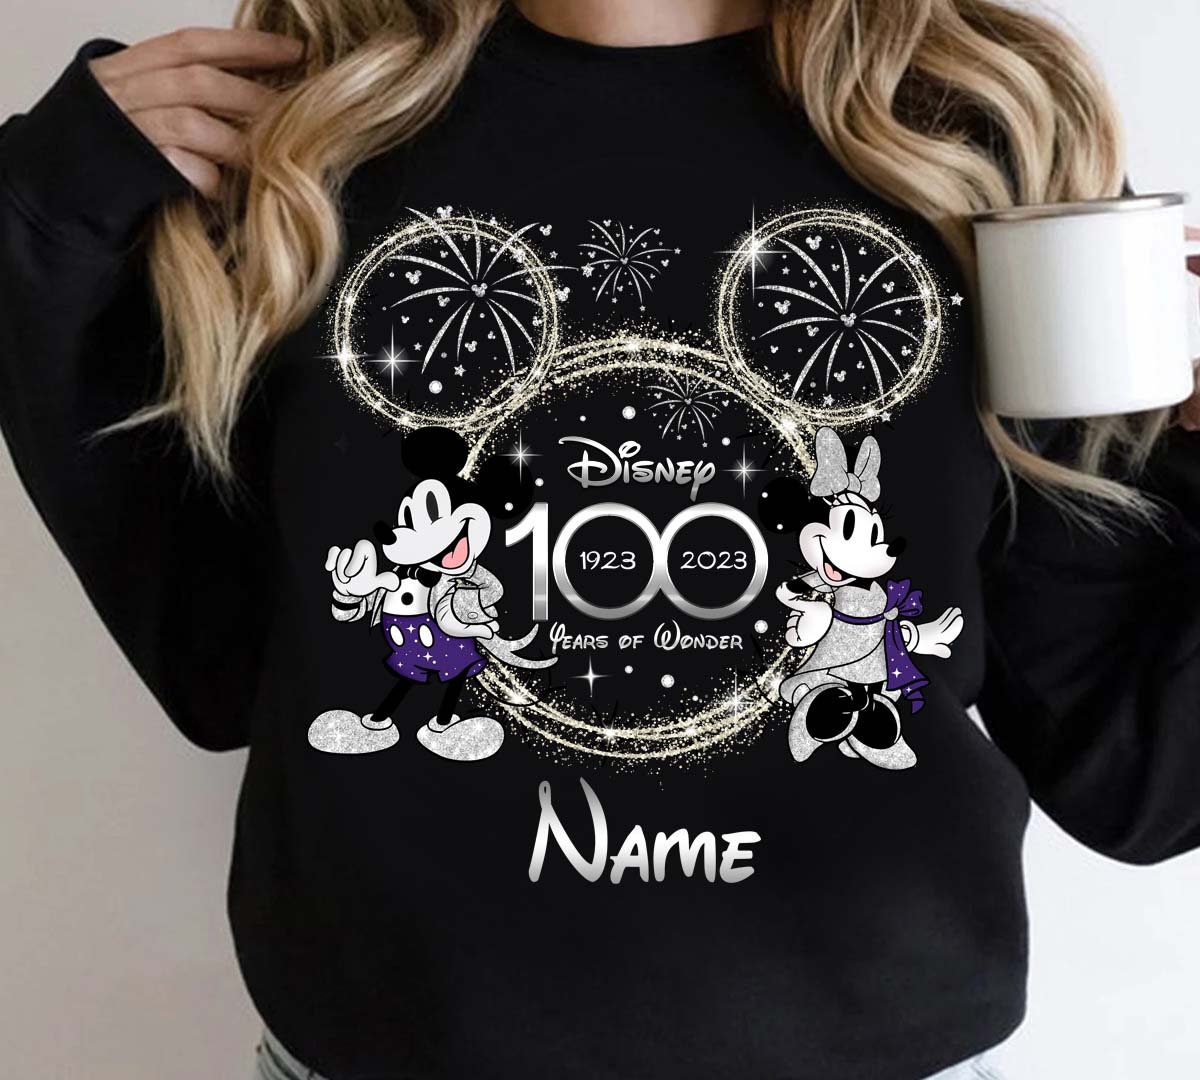 Discover 100th Disney Anniversary Shirt, Disney 100 Years of Wonder Sweatshirt